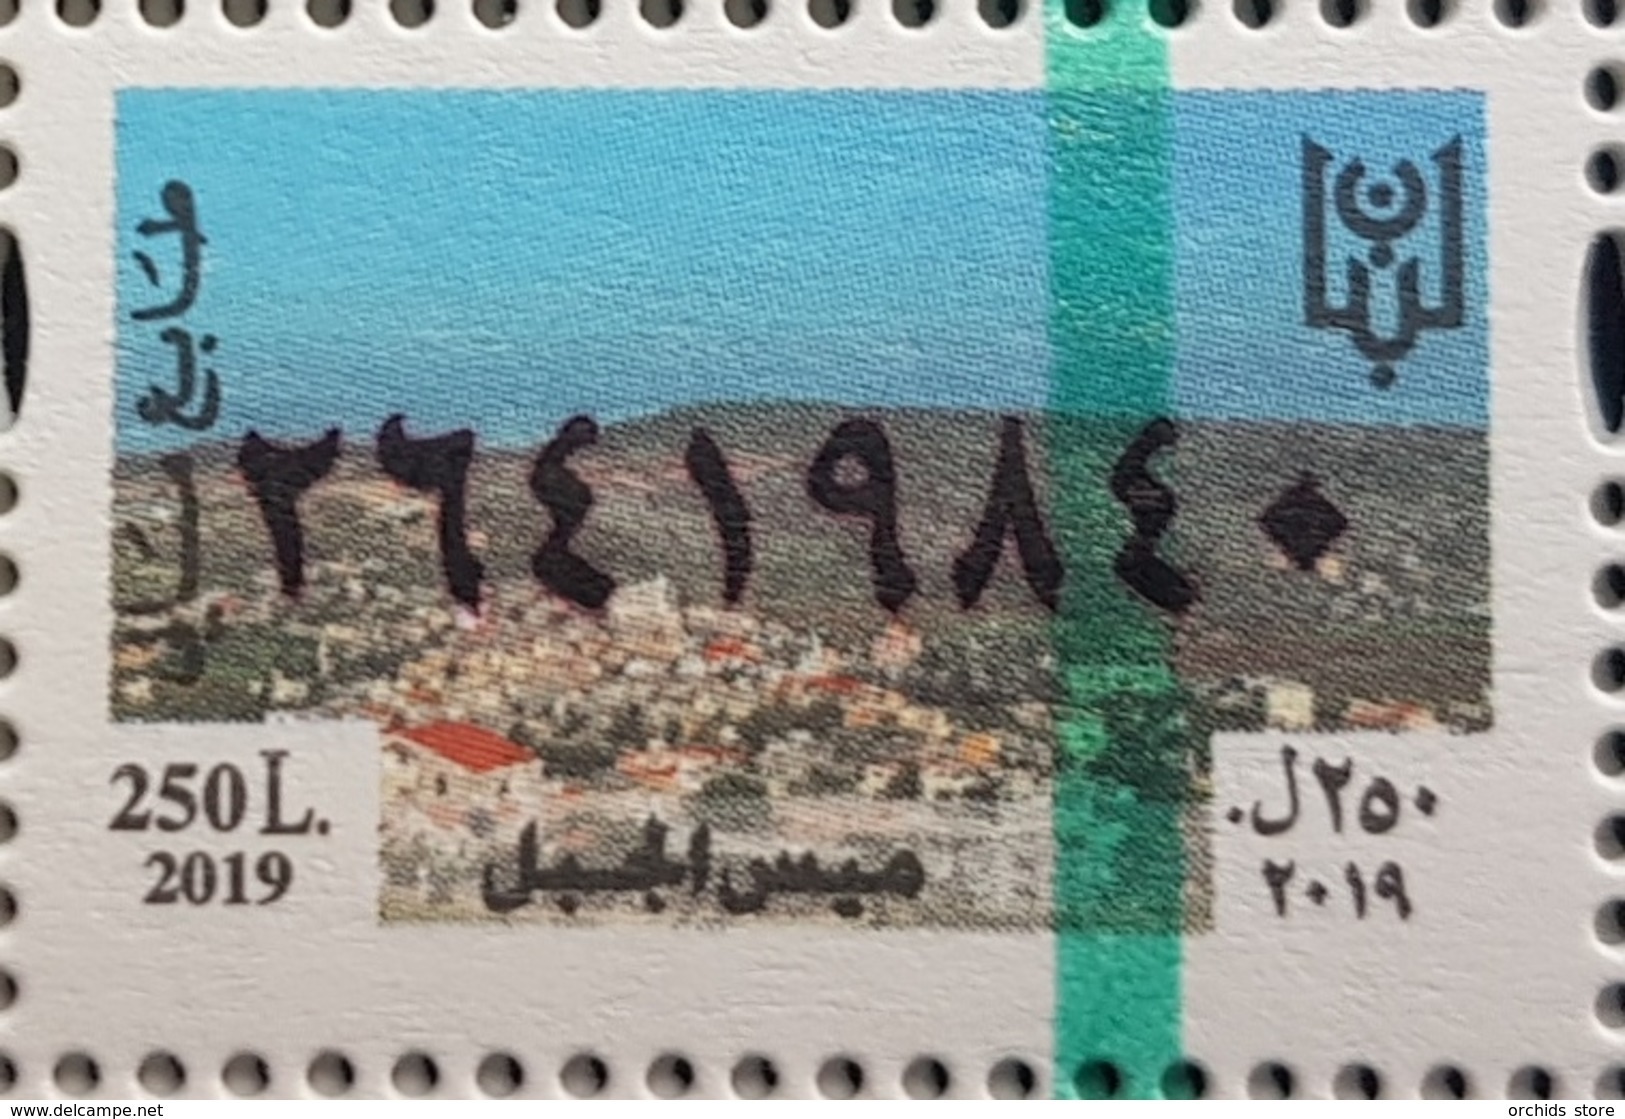 Lebanon 2019 MNH NEW Fiscal Revenue Stamp - 250L Mays El Jabal - Lebanon